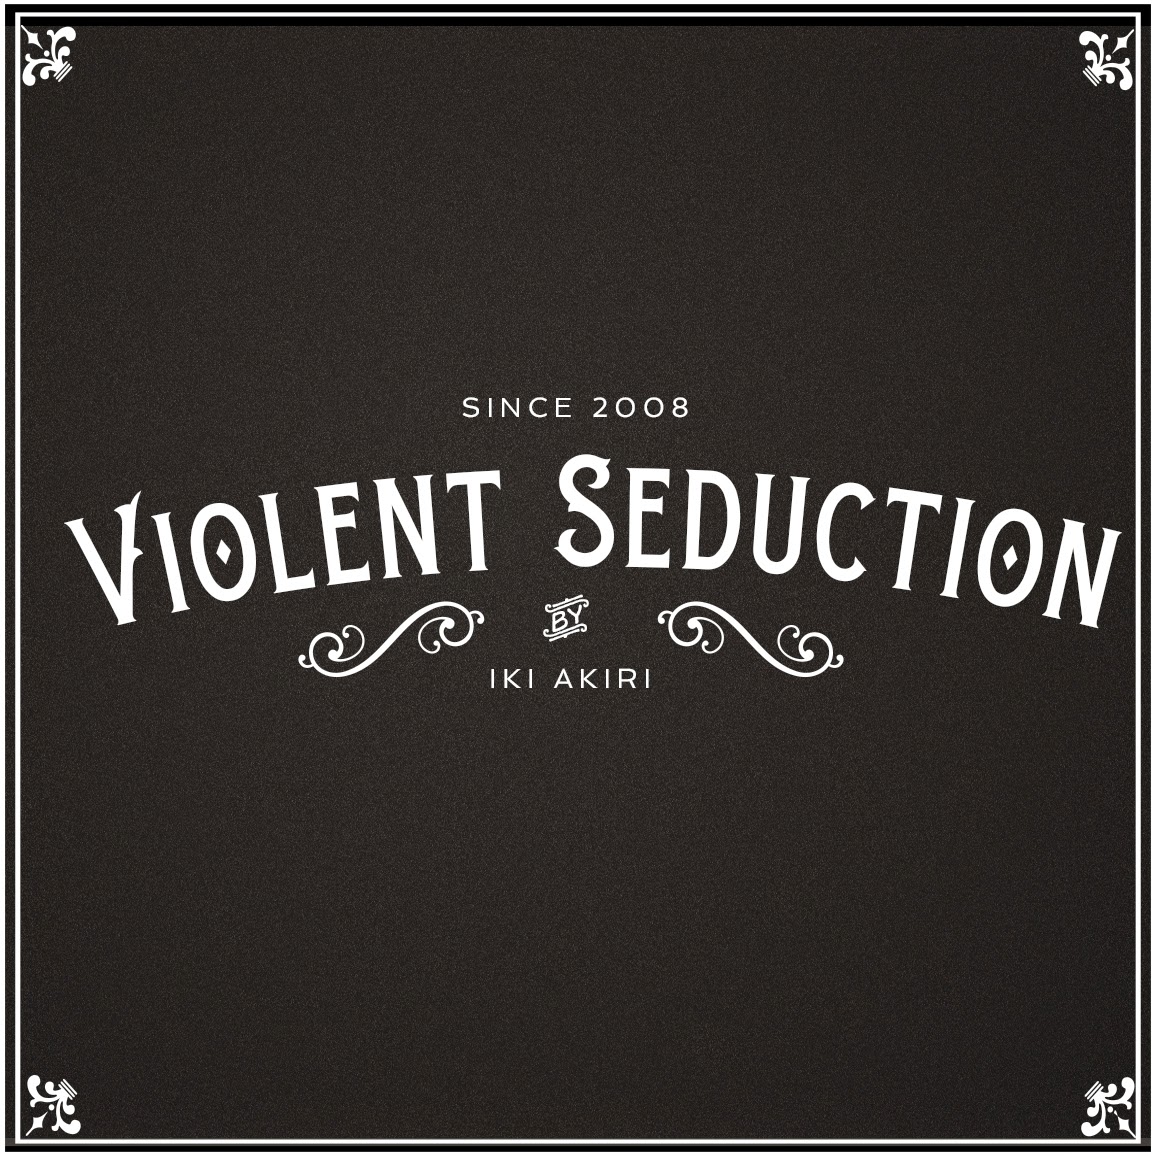 violent_seduction